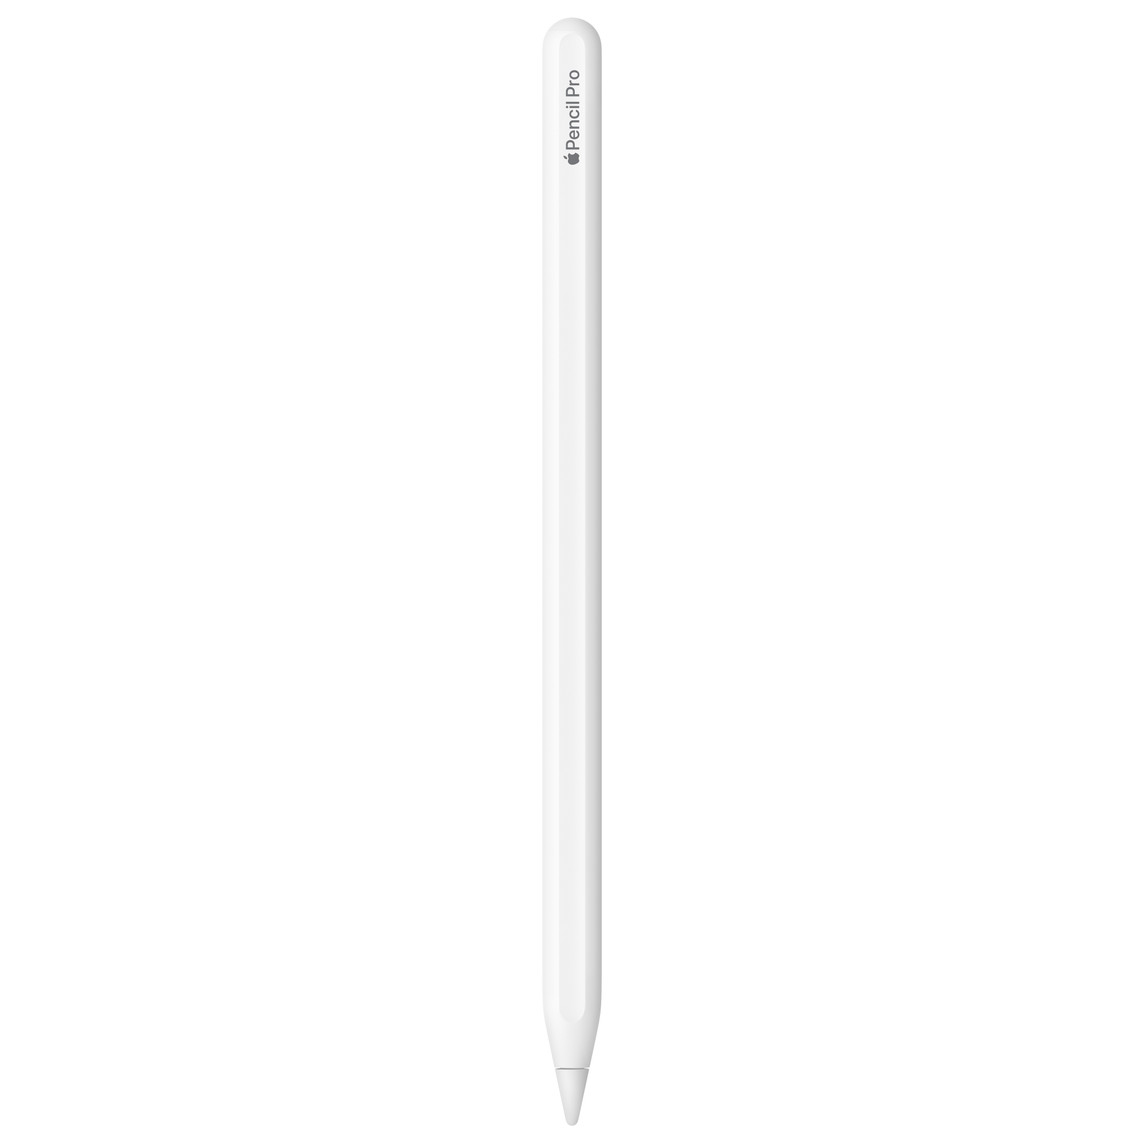 圖片展示白色 Apple Pencil Pro，上面鐫刻 Apple Pencil Pro 字樣，Apple 一字以 Apple 標誌表示。